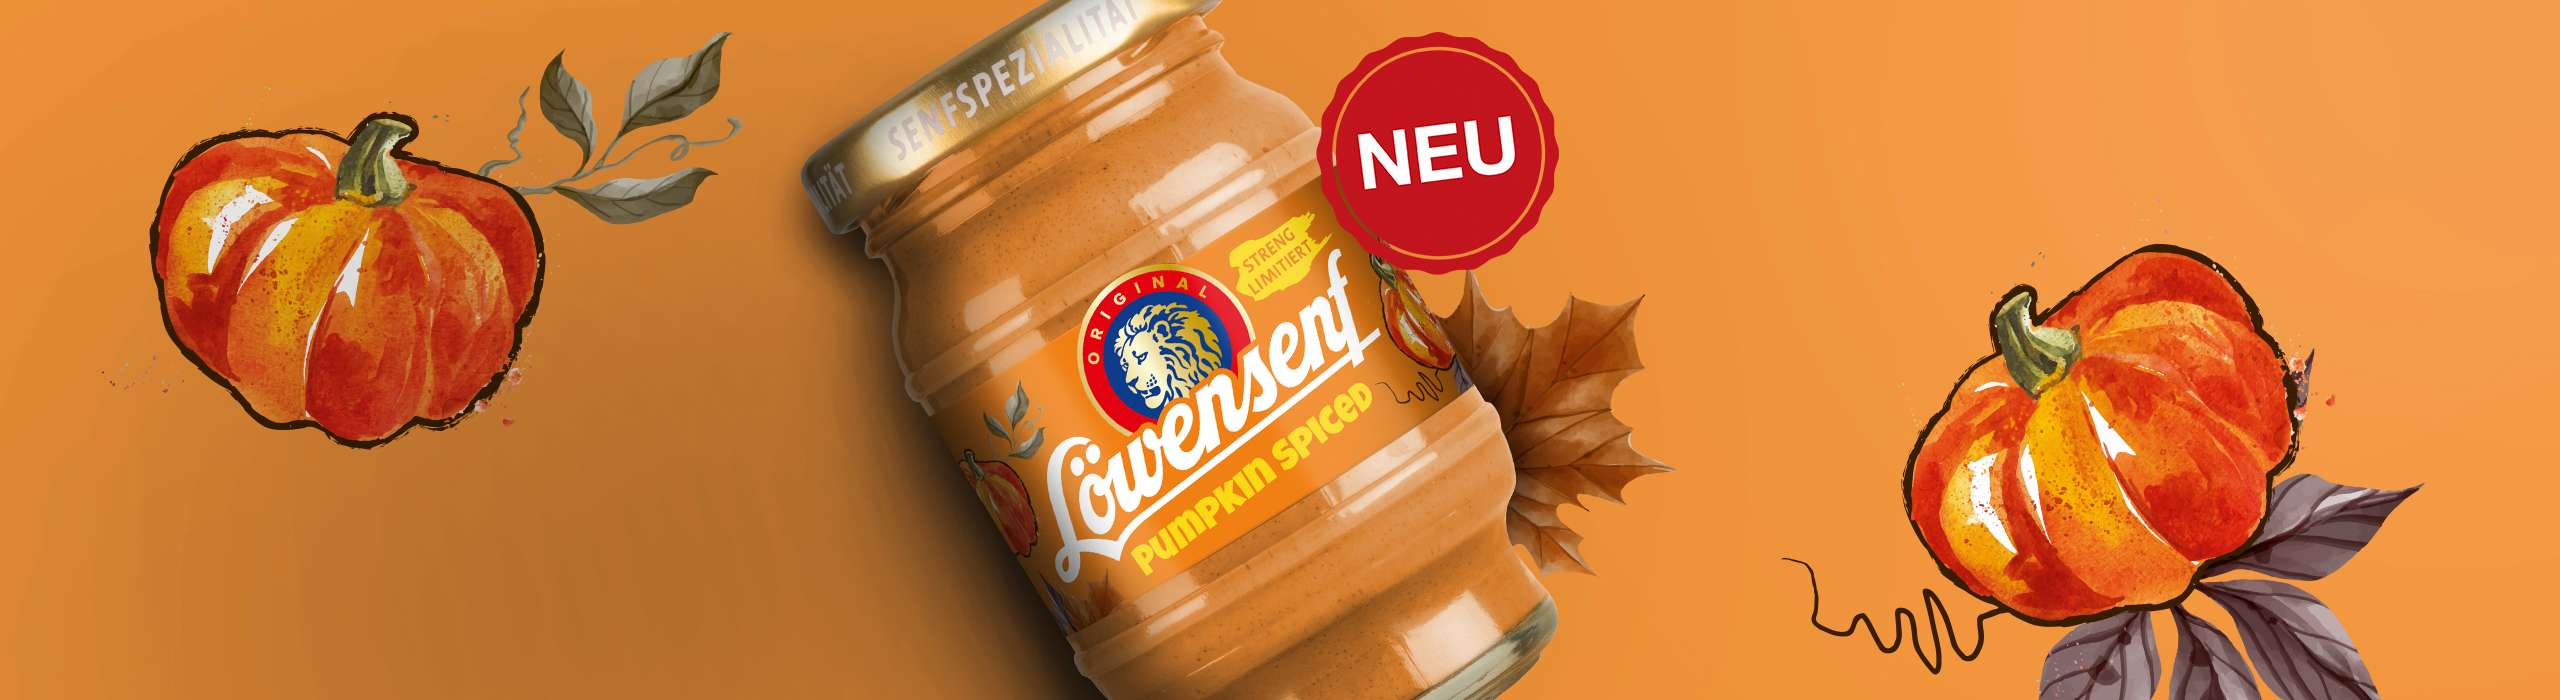 Limited Edition Pumpkin Spiced Senf - Kürbissenf